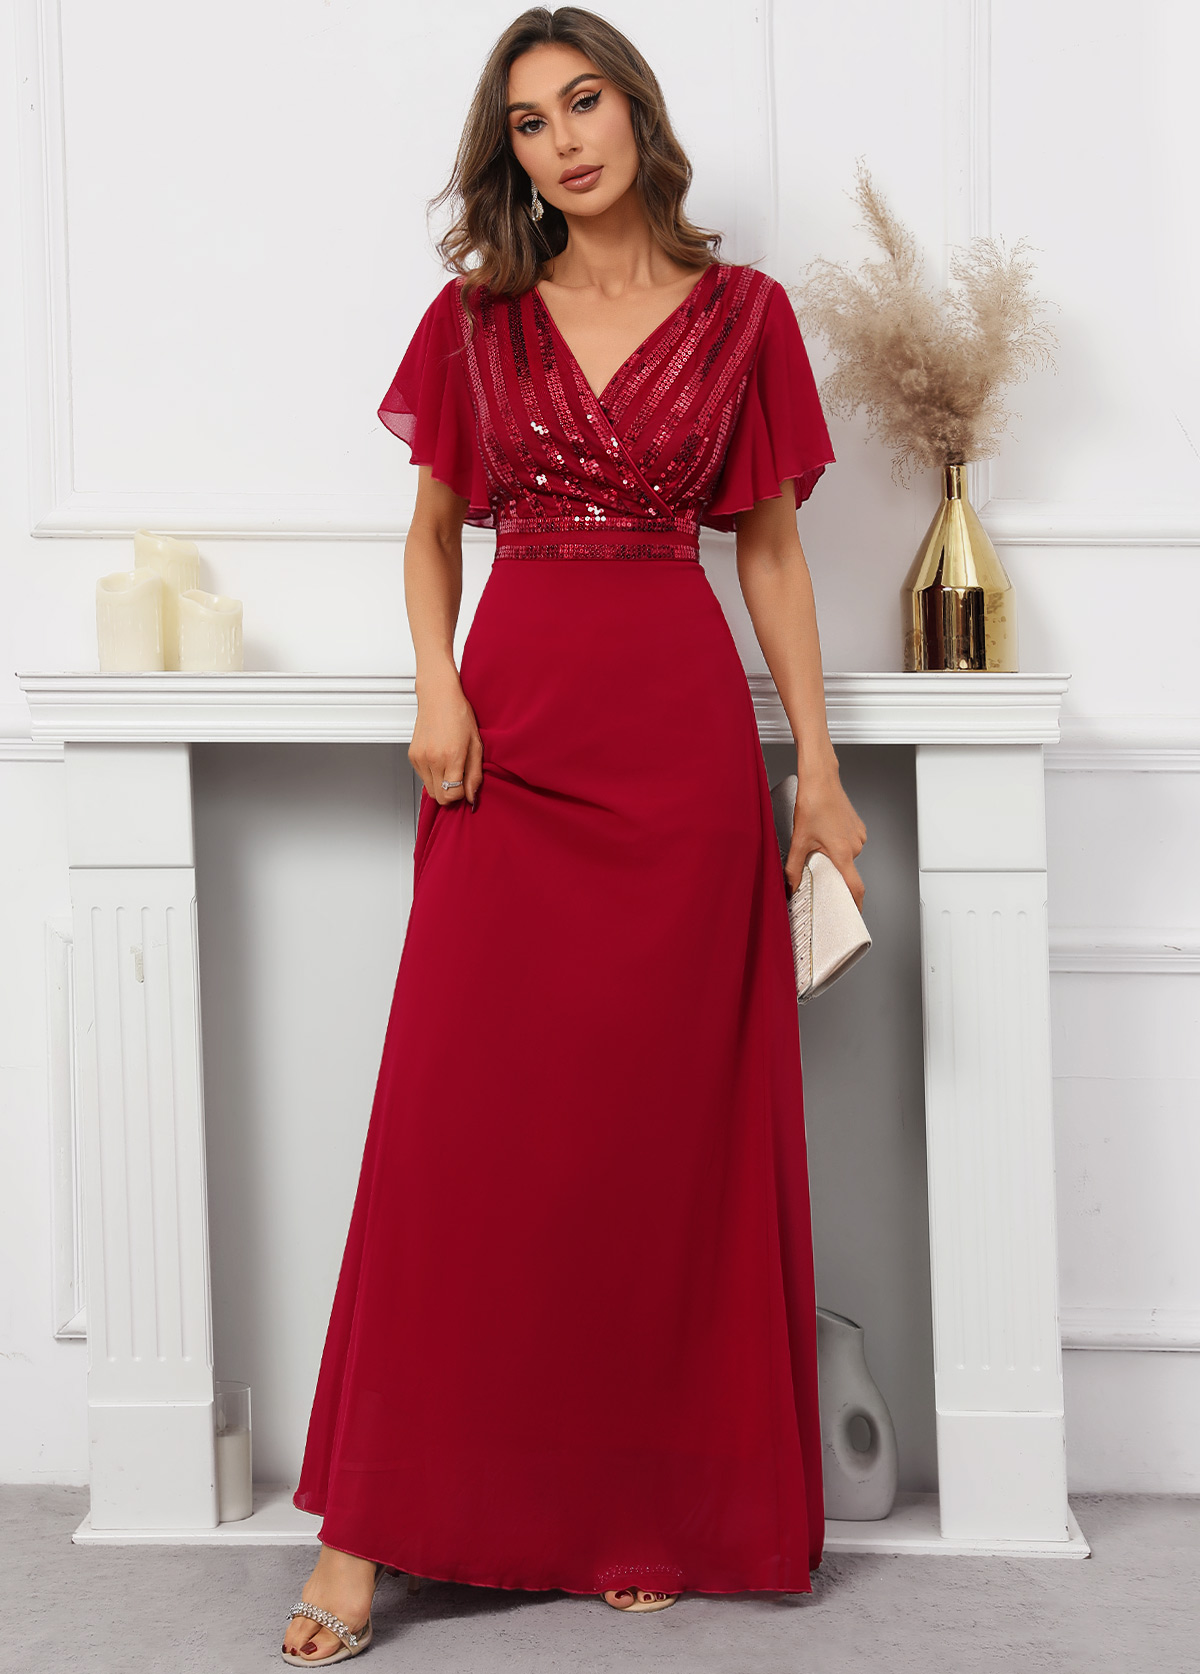 Sequin Red Short Sleeve V Neck Dress | Rosewe.com - USD $41.98